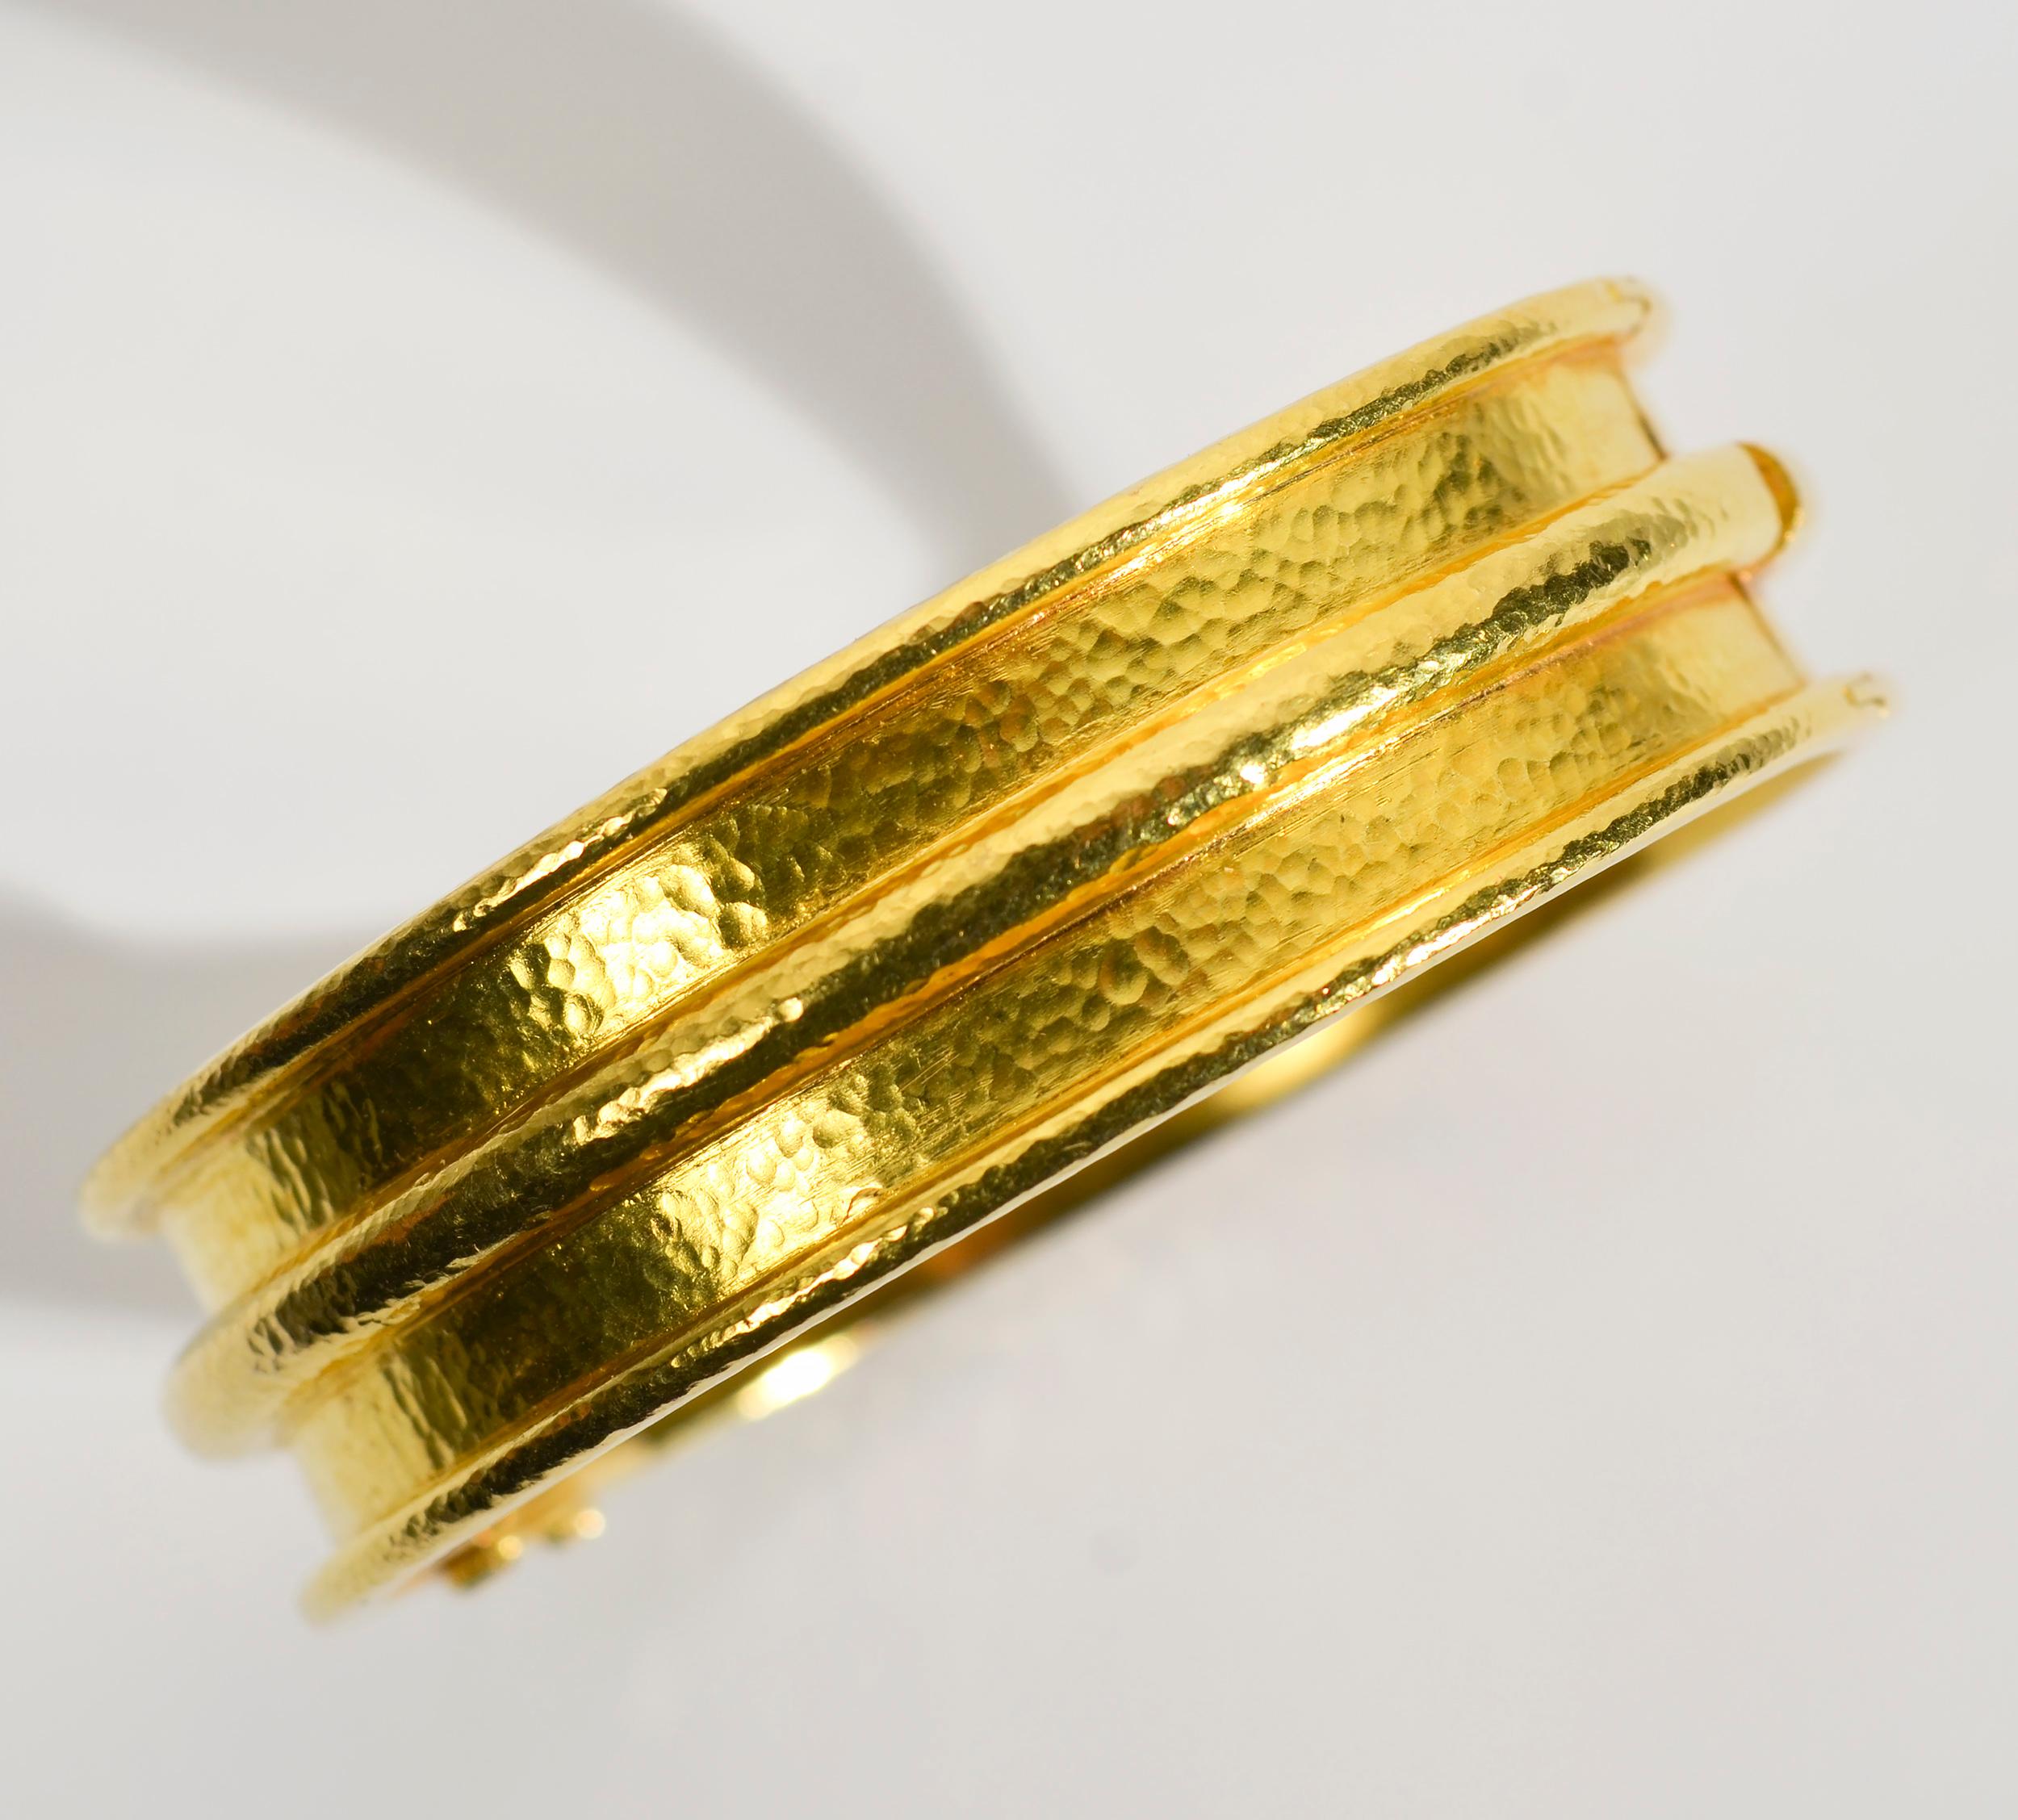 Bracelet à charnière Elizabeth Locke dans sa finition classique en or martelé. Le bracelet est doté de canaux en relief aux extrémités et au milieu.
Le bracelet mesure 2 1/4 pouces de diamètre et 5/8 pouces de hauteur. Il n'a pas été porté.
Vendu